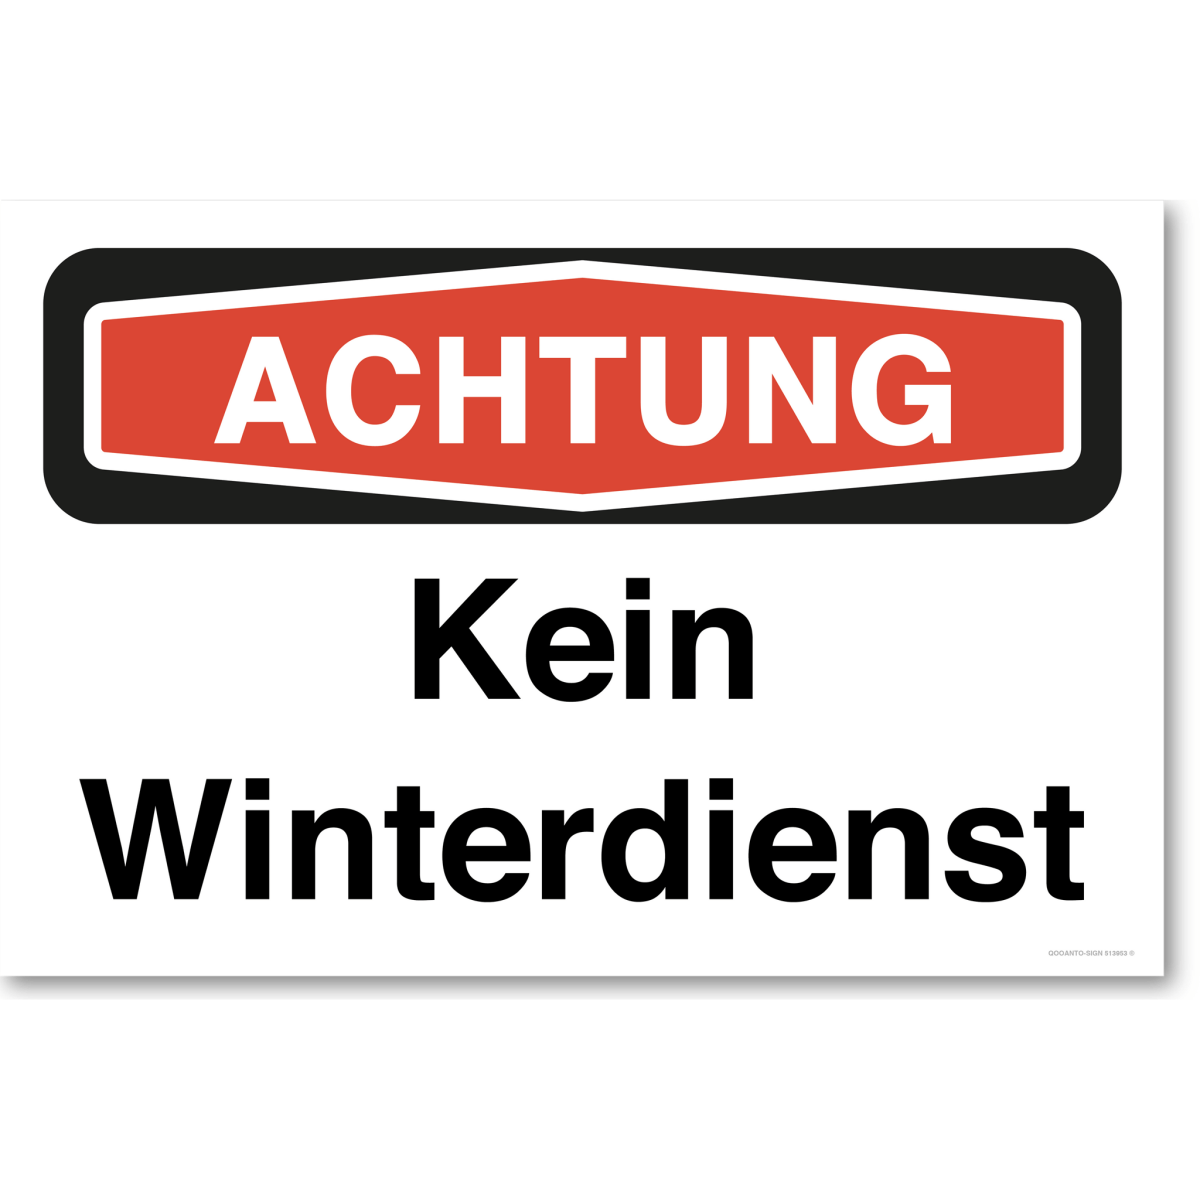 Achtung Kein Winterdienst Schild aus Alu-Verbund mit UV-Schutz - QOOANTO-SIGN